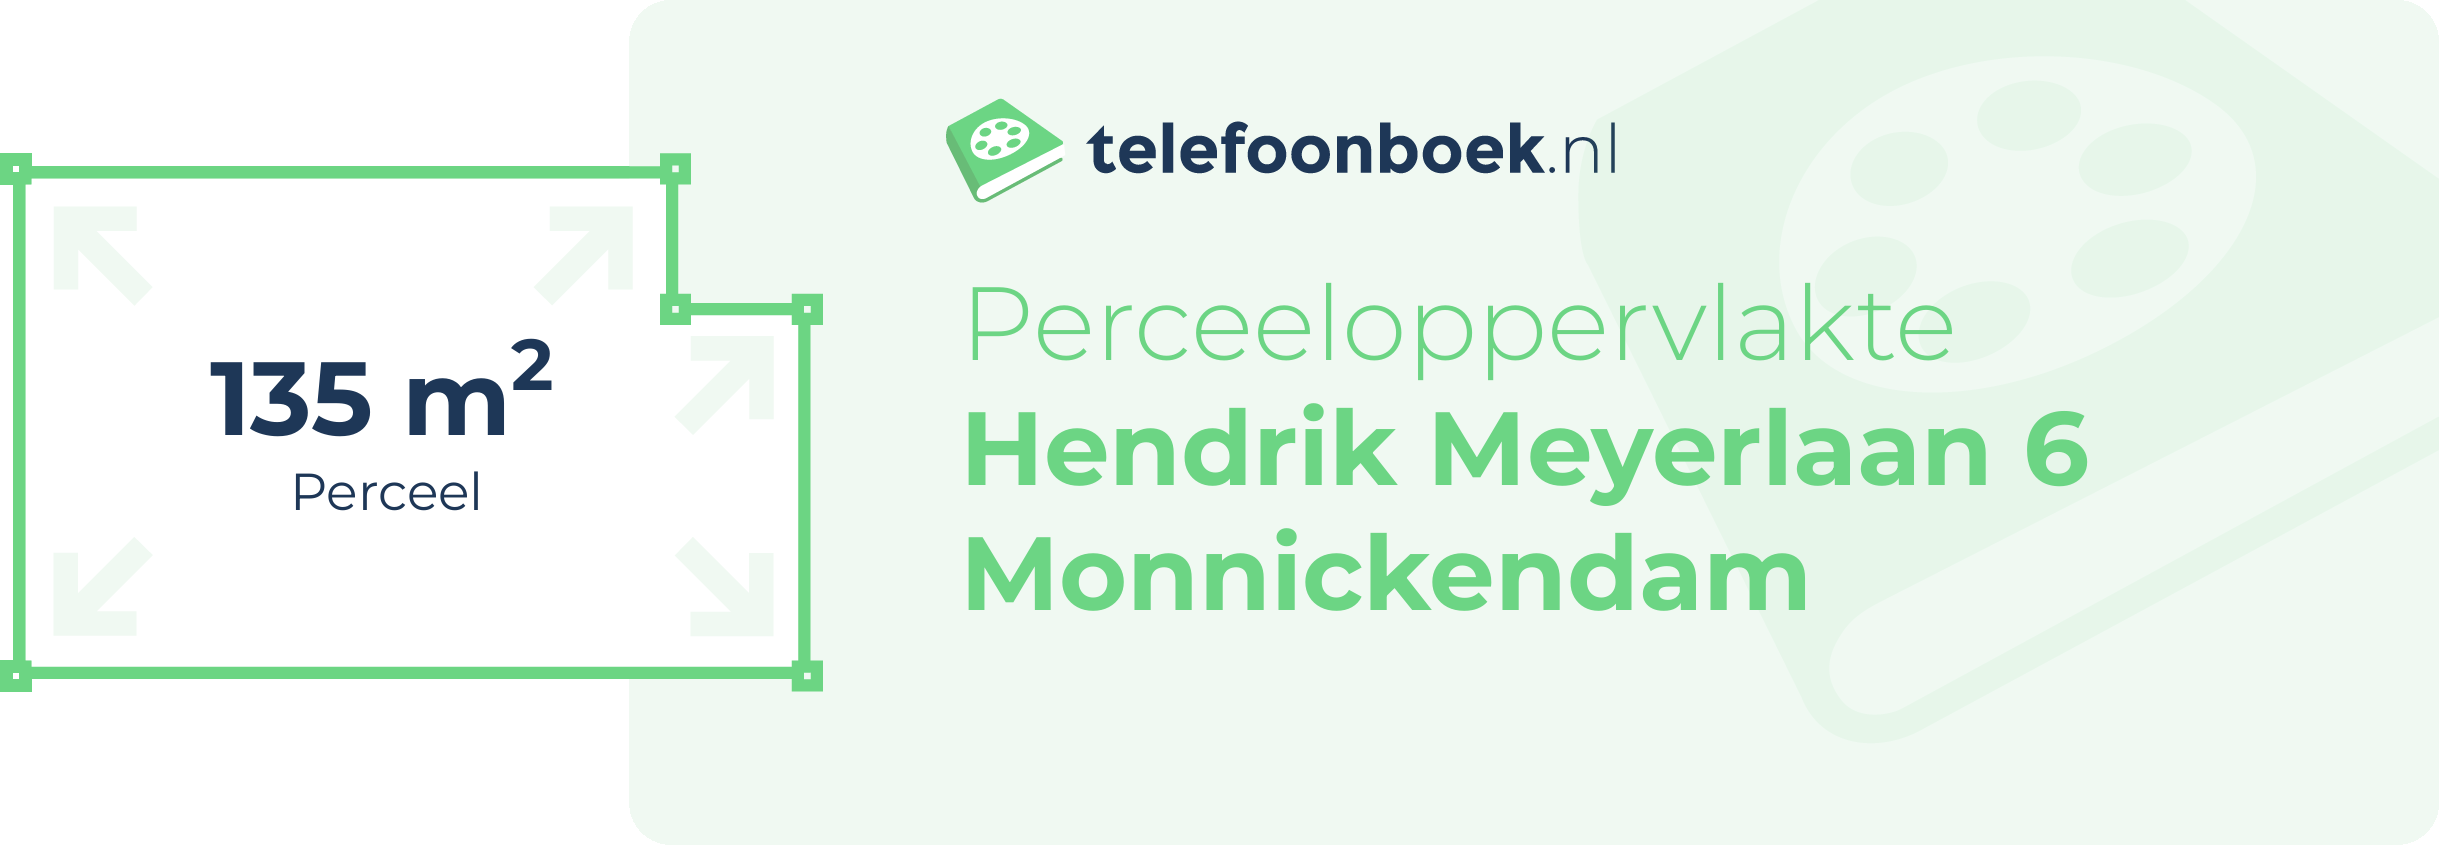 Perceeloppervlakte Hendrik Meyerlaan 6 Monnickendam